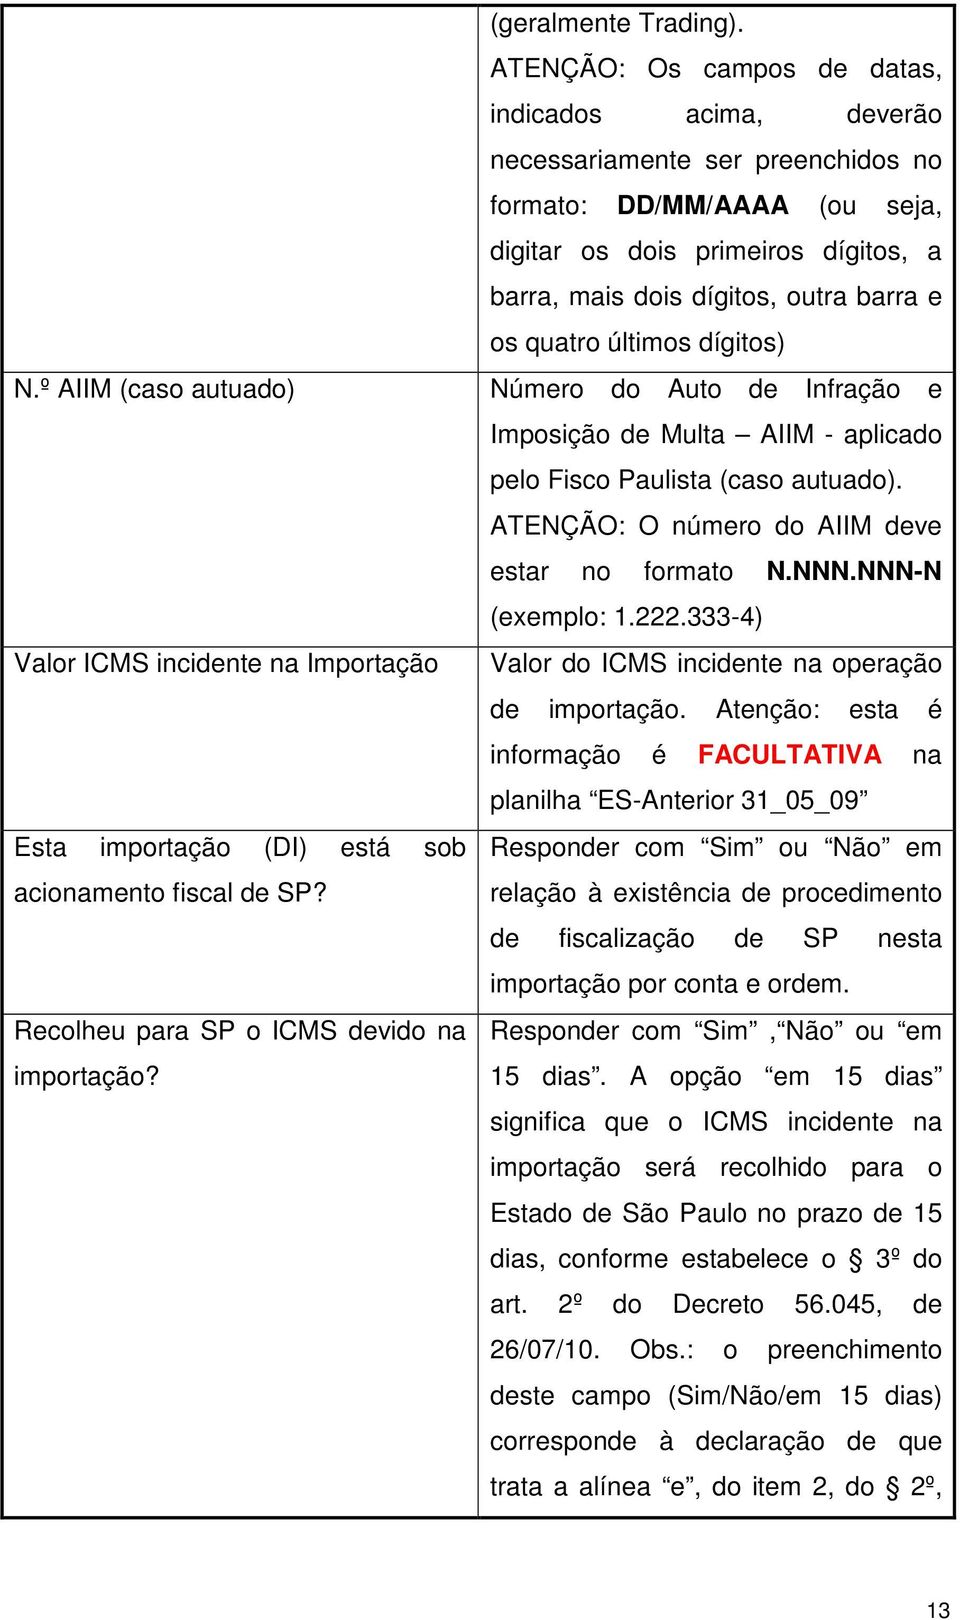 quatro últimos dígitos) Número do Auto de Infração e Imposição de Multa AIIM - aplicado pelo Fisco Paulista (caso autuado). ATENÇÃO: O número do AIIM deve estar no formato N.NNN.NNN-N (exemplo: 1.222.